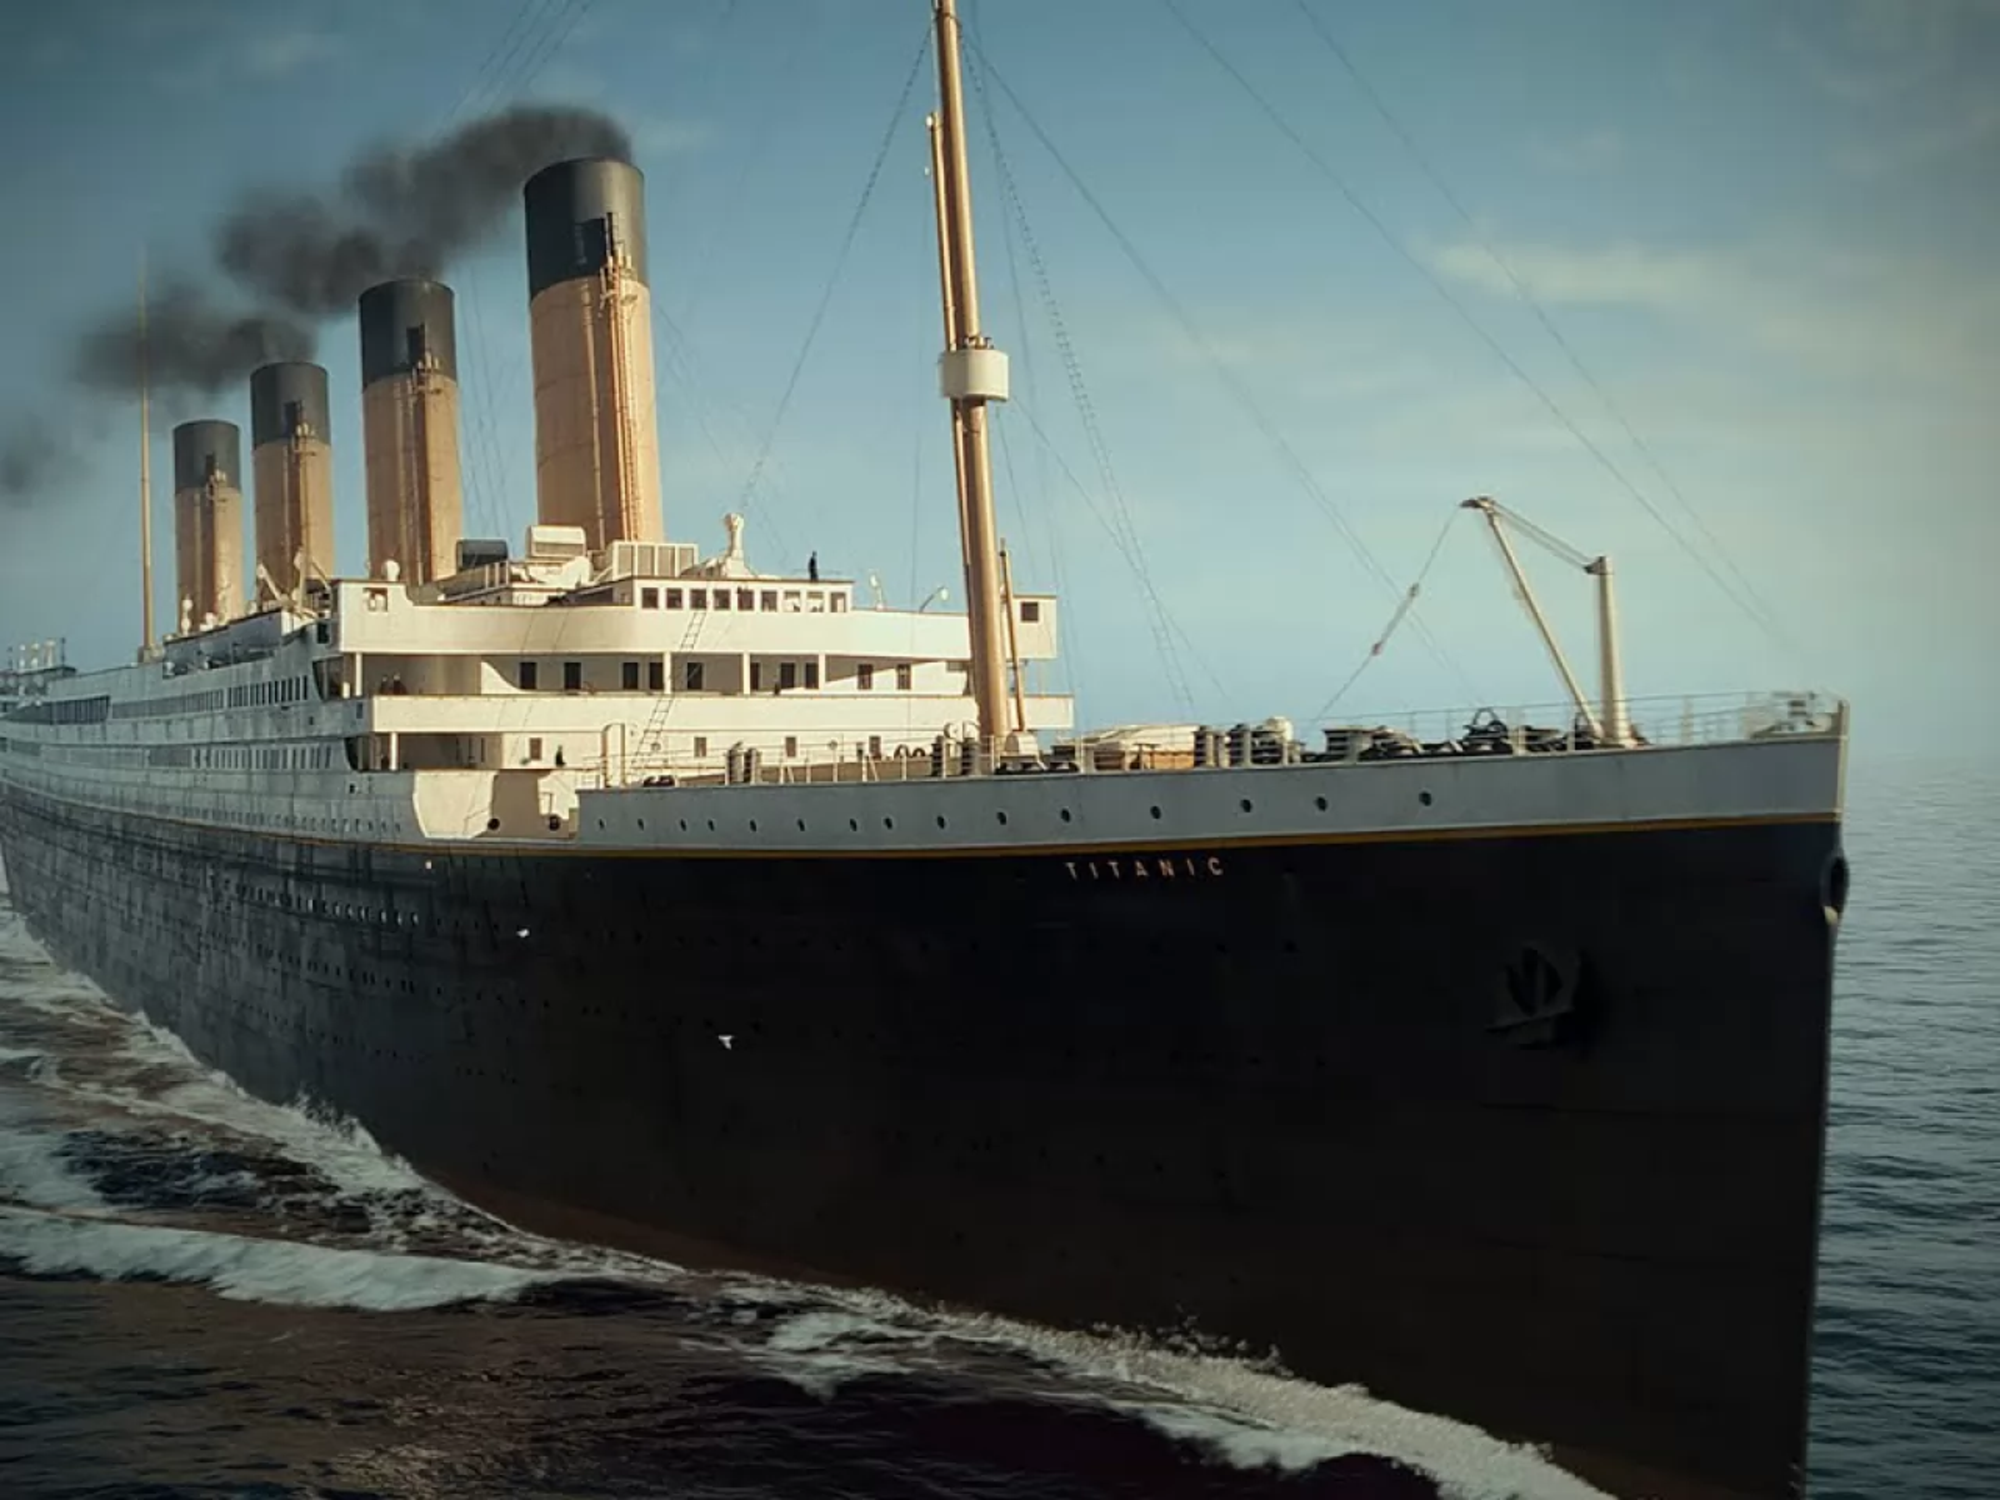 La maledizione del Titanic, disperso un batiscafo turistico - Mondo - Alto  Adige